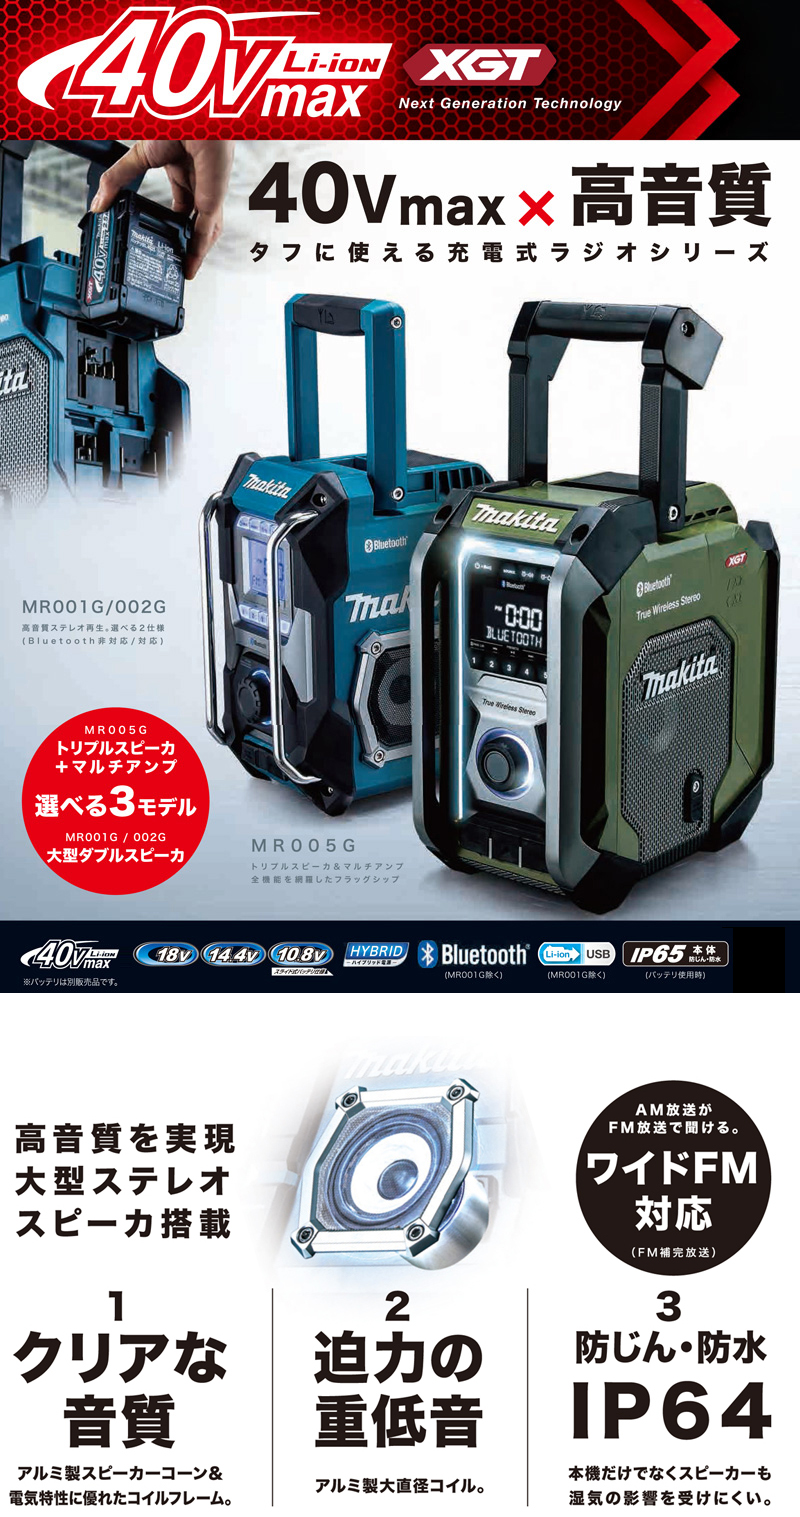 マキタ 充電式ラジオ【USB/Bluetooth対応】【重低音域用ウーハー